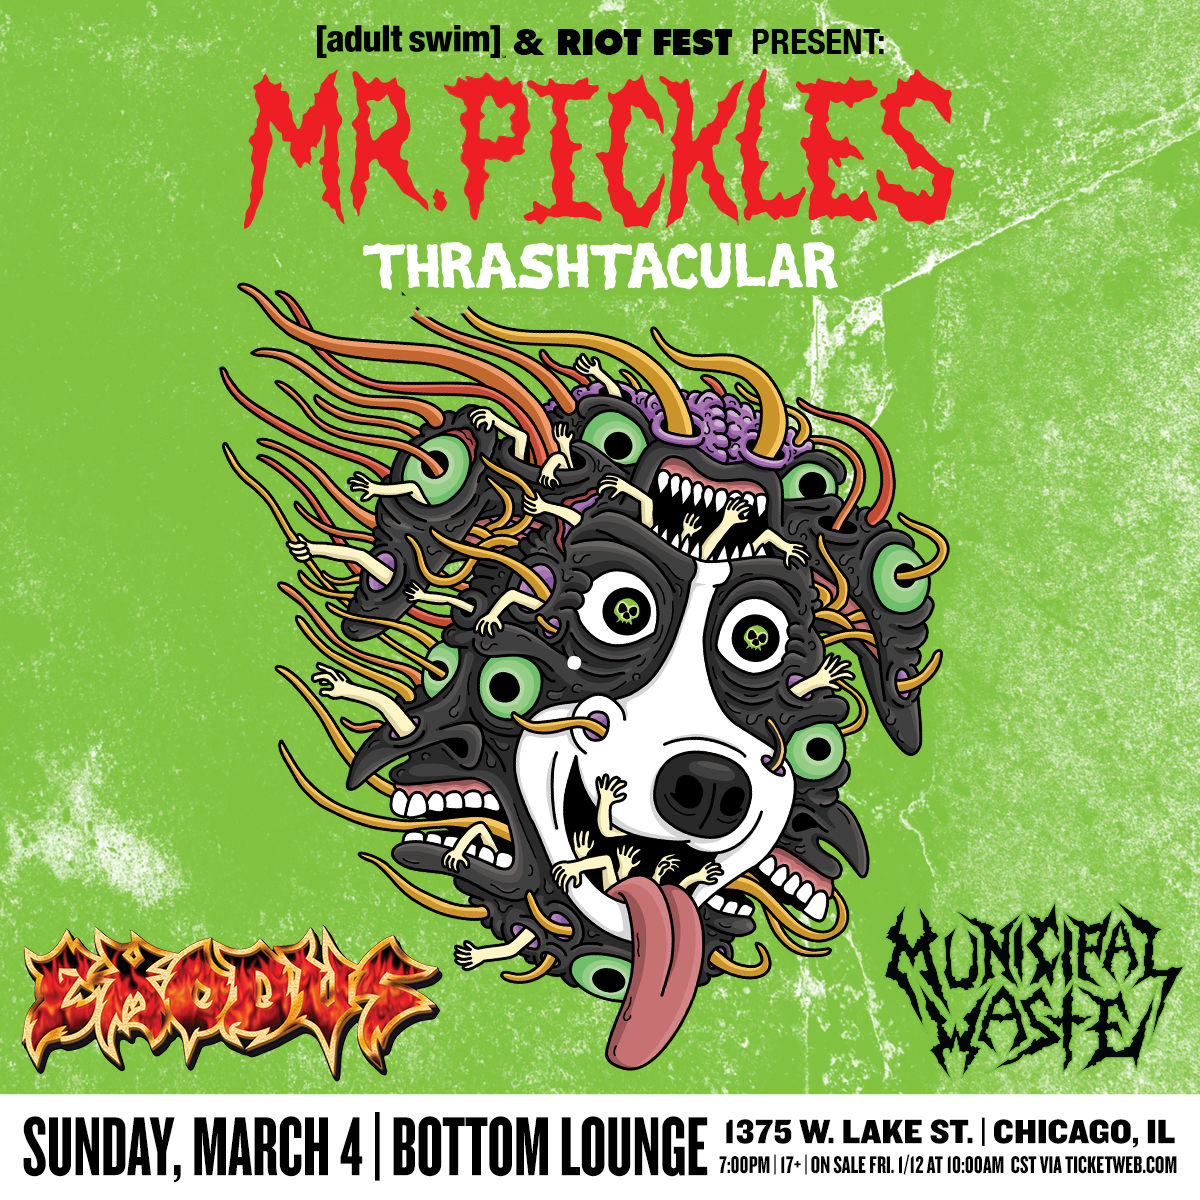 Mr. Pickles - 10 | Sticker